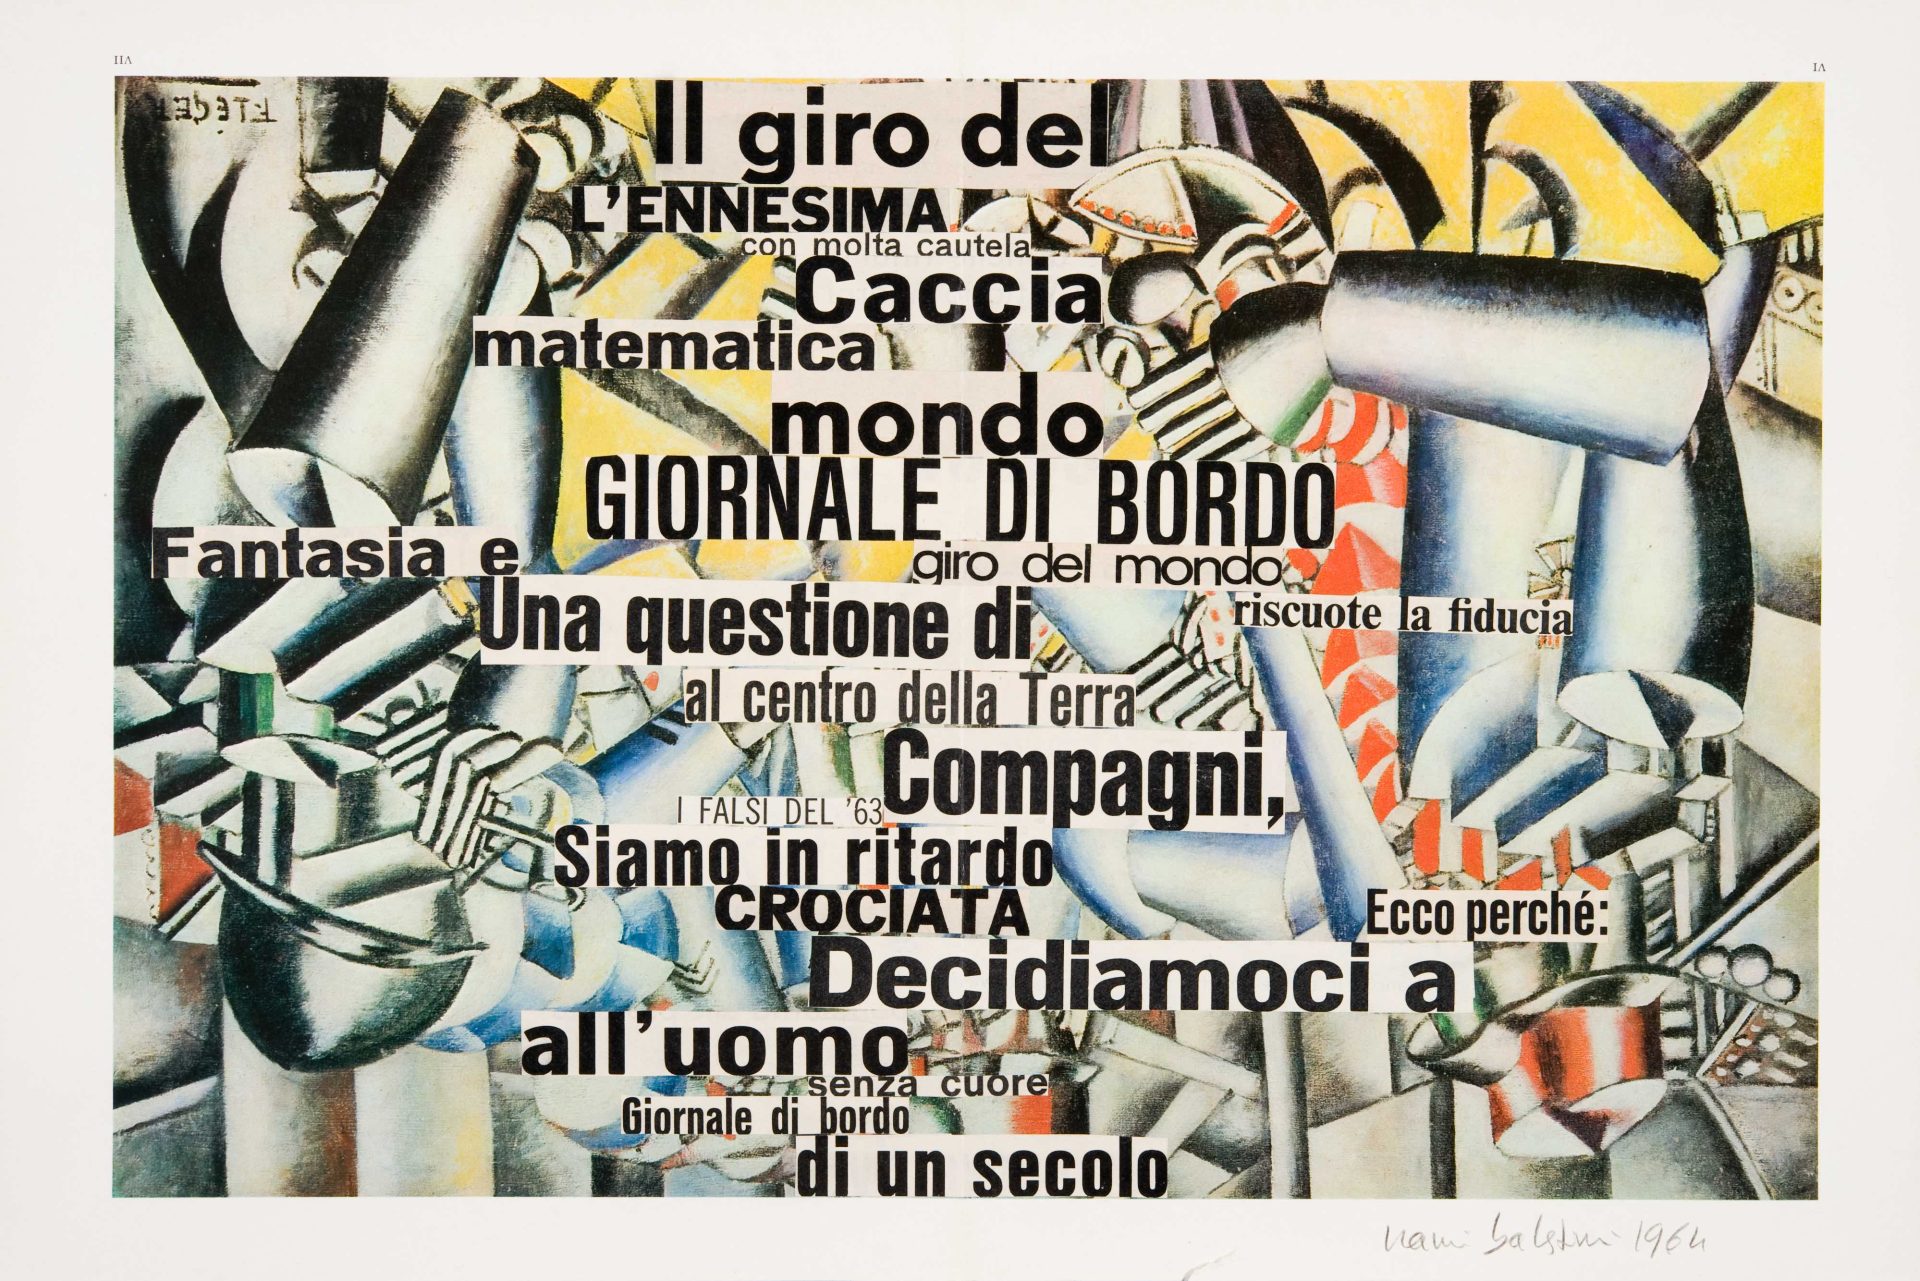 Nanni Balestrini, 'Giornale di bordo (La partita a carte)', 1964. Collage on paper. Private collection, Mirano (Venezia)